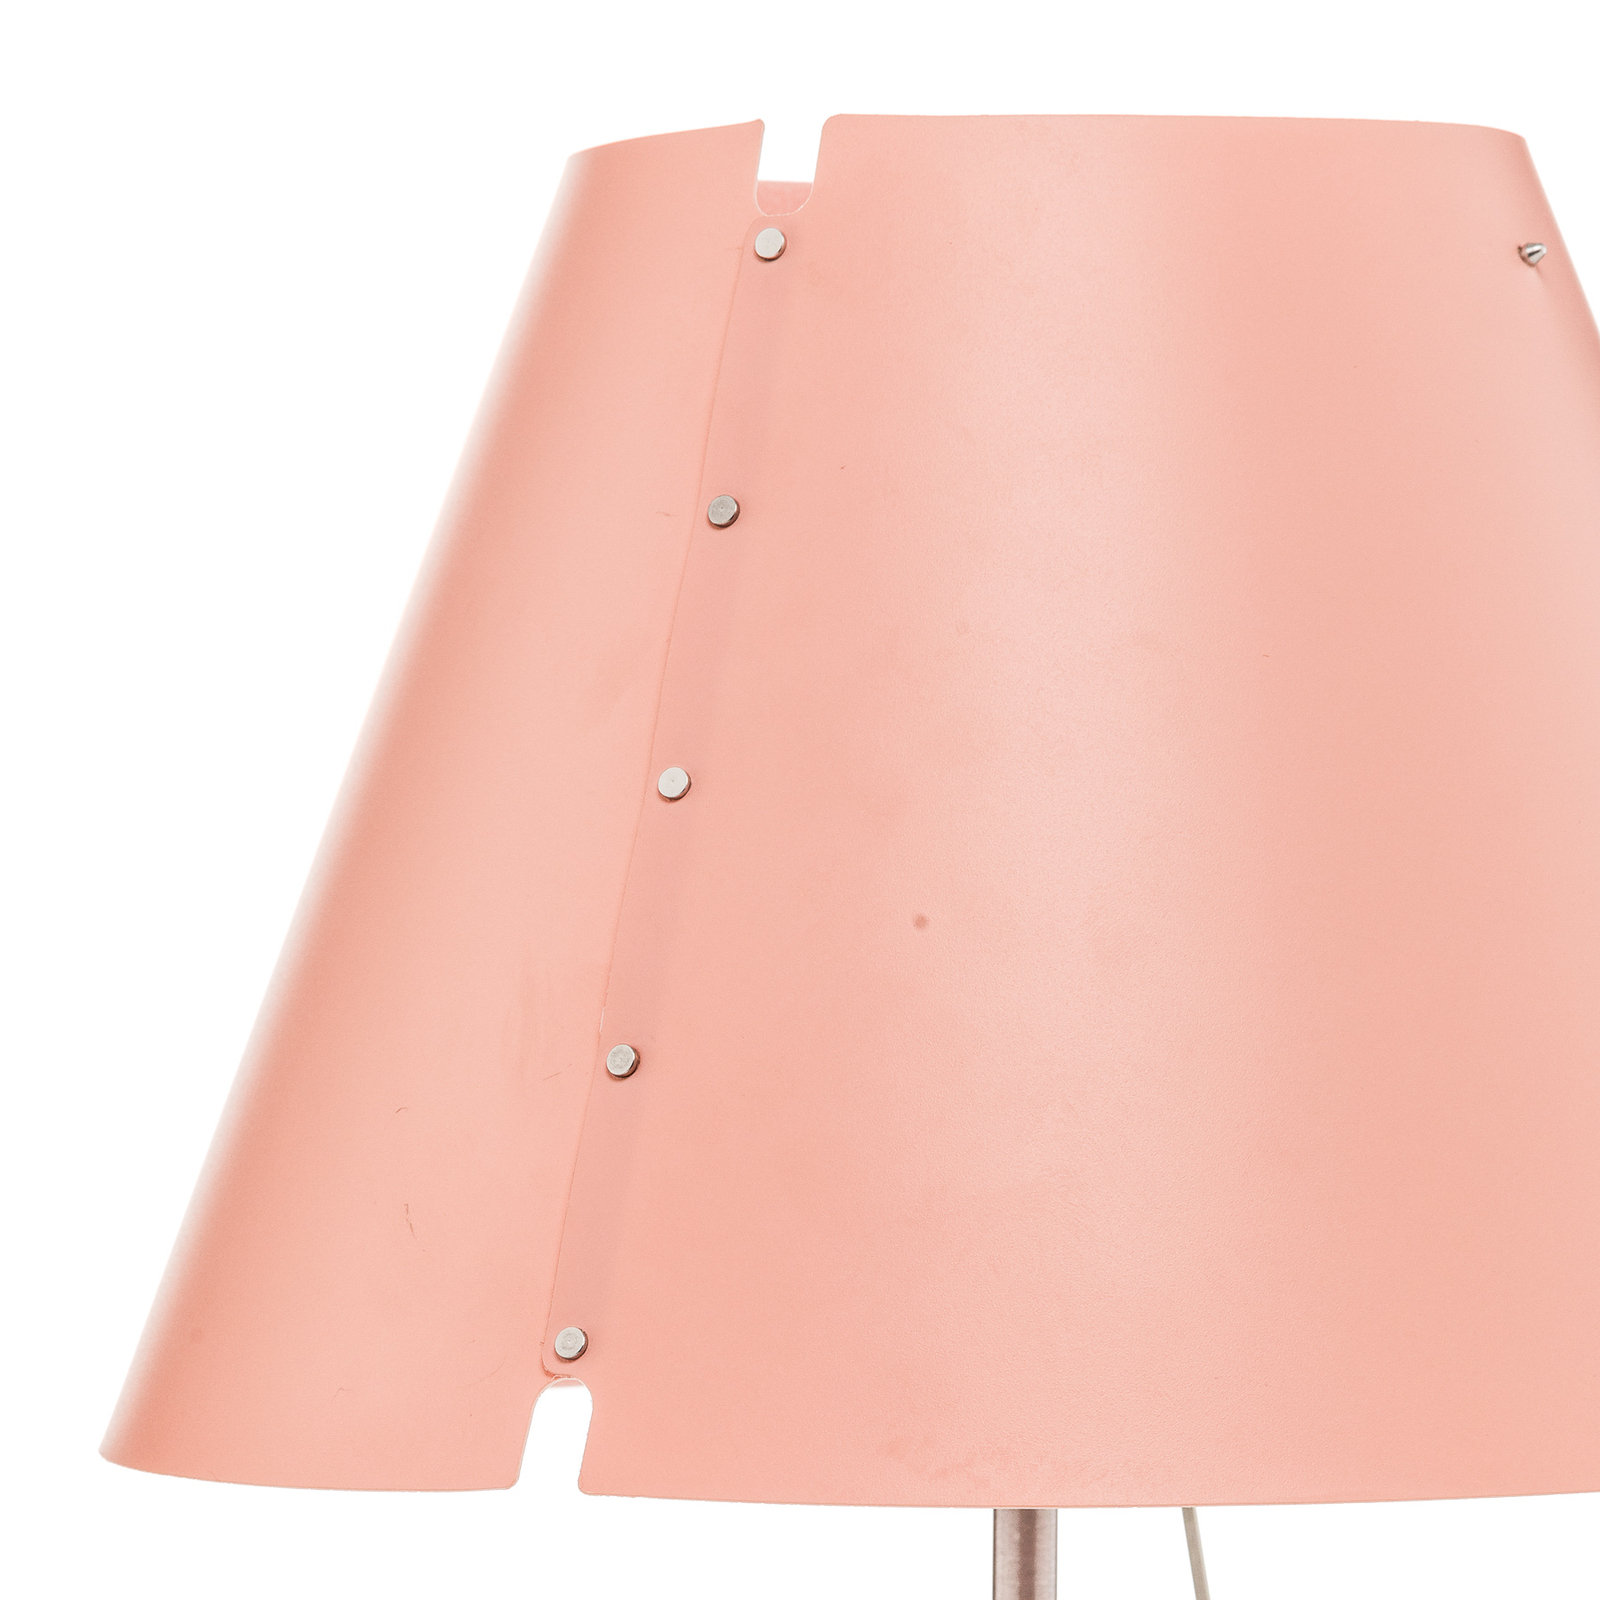 Luceplan Costanzina asztali lámpa alu, rózsaszín